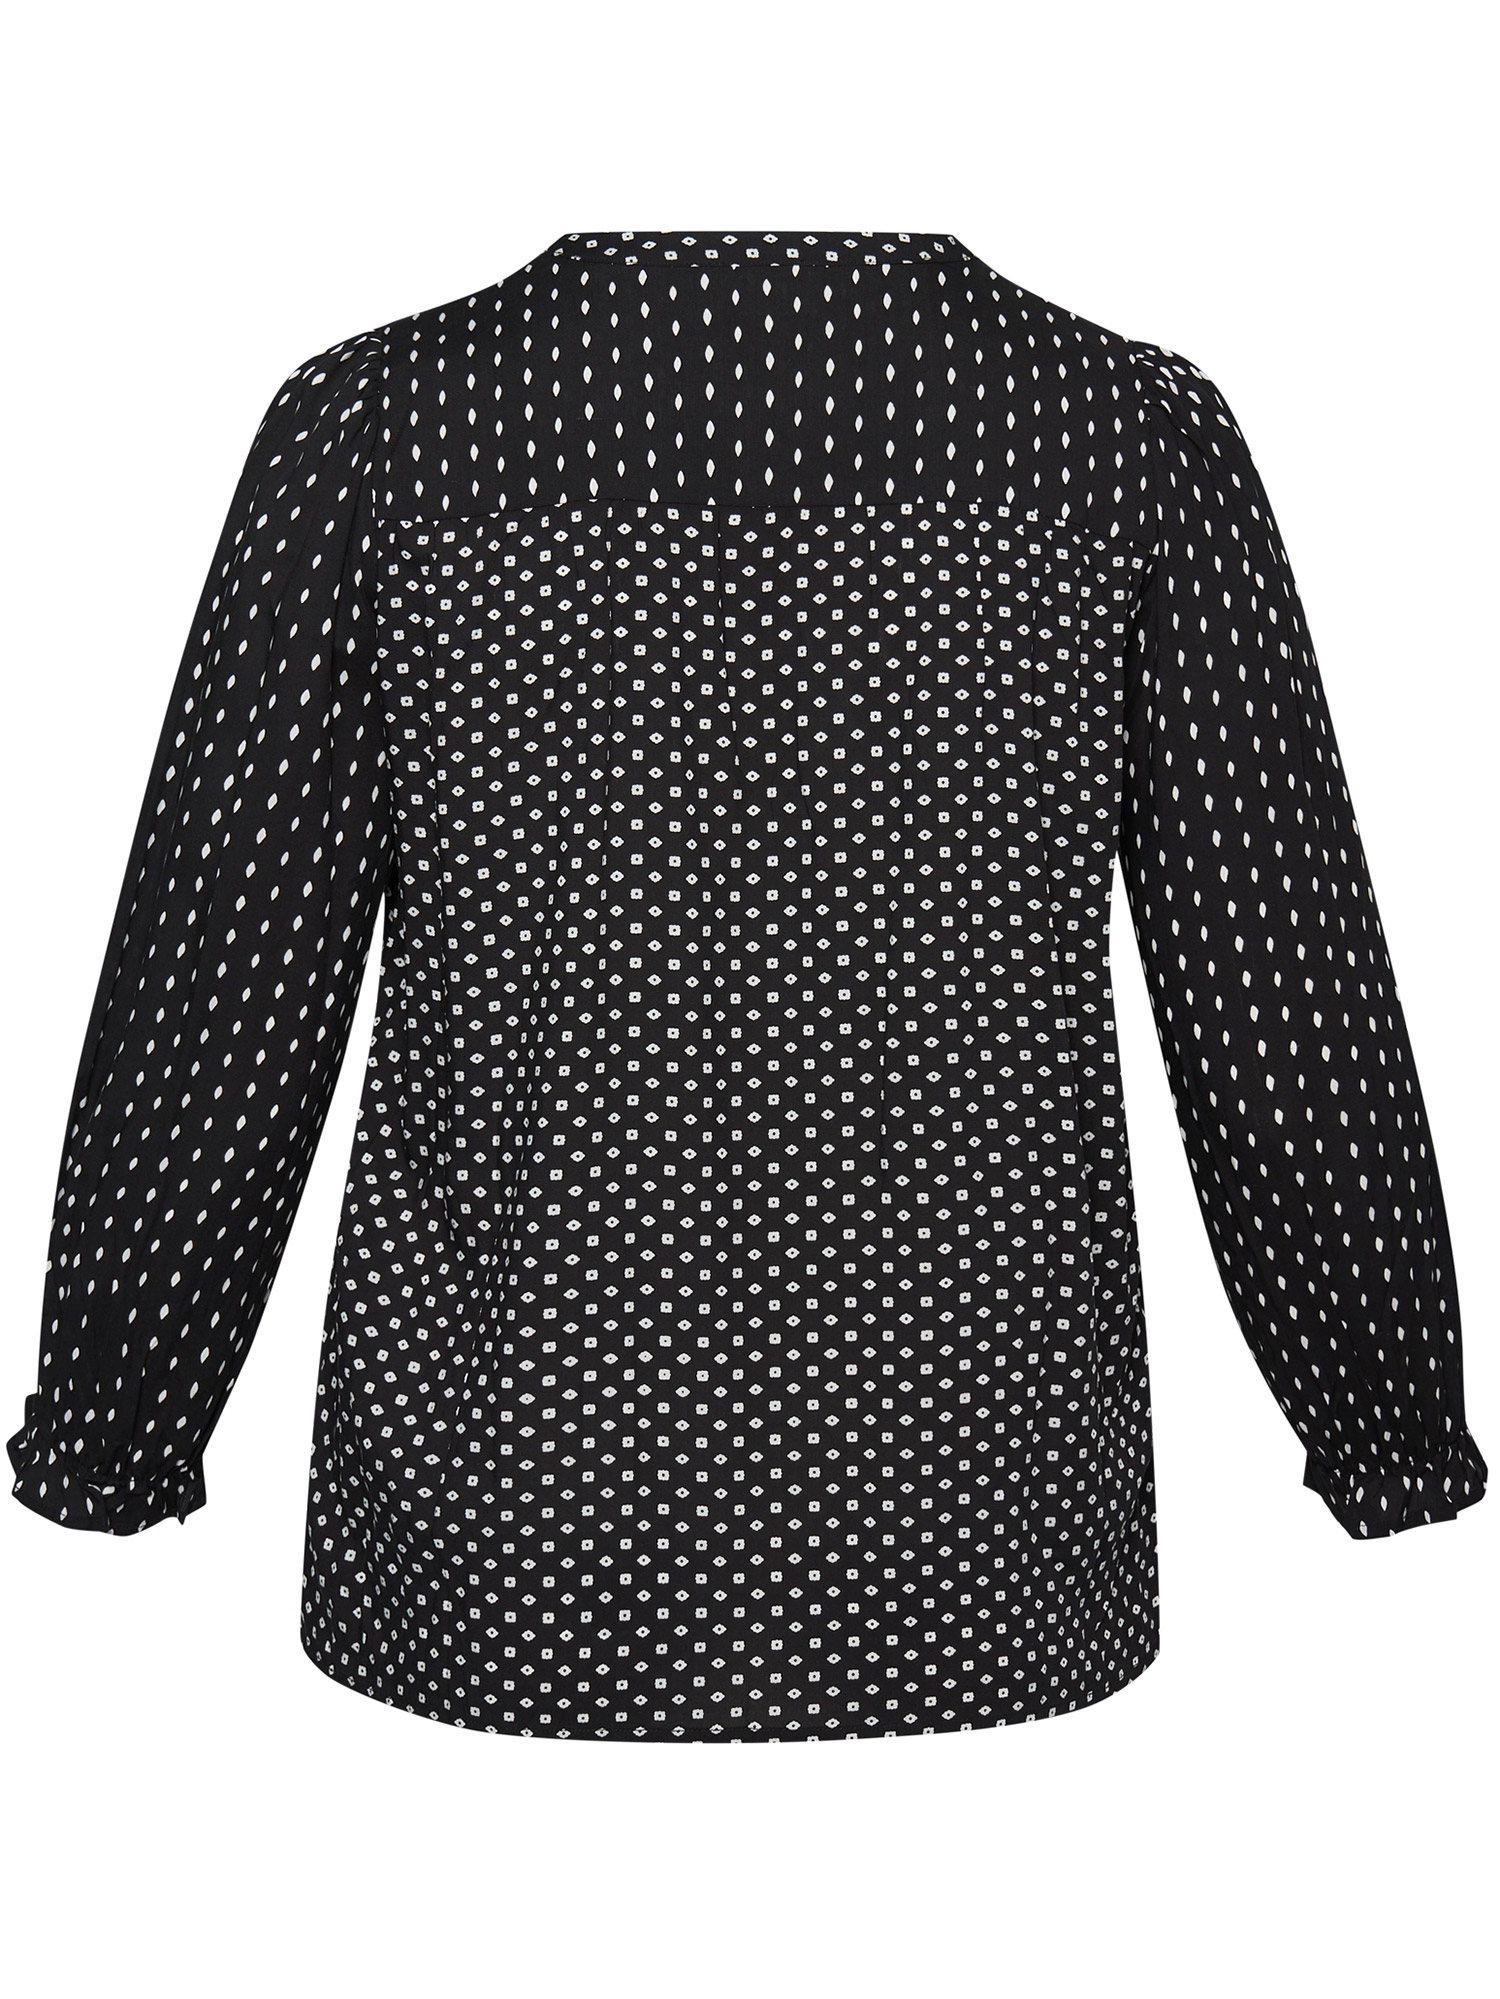 Jackson - Flot sort viskose bluse med hvid mønster fra Aprico